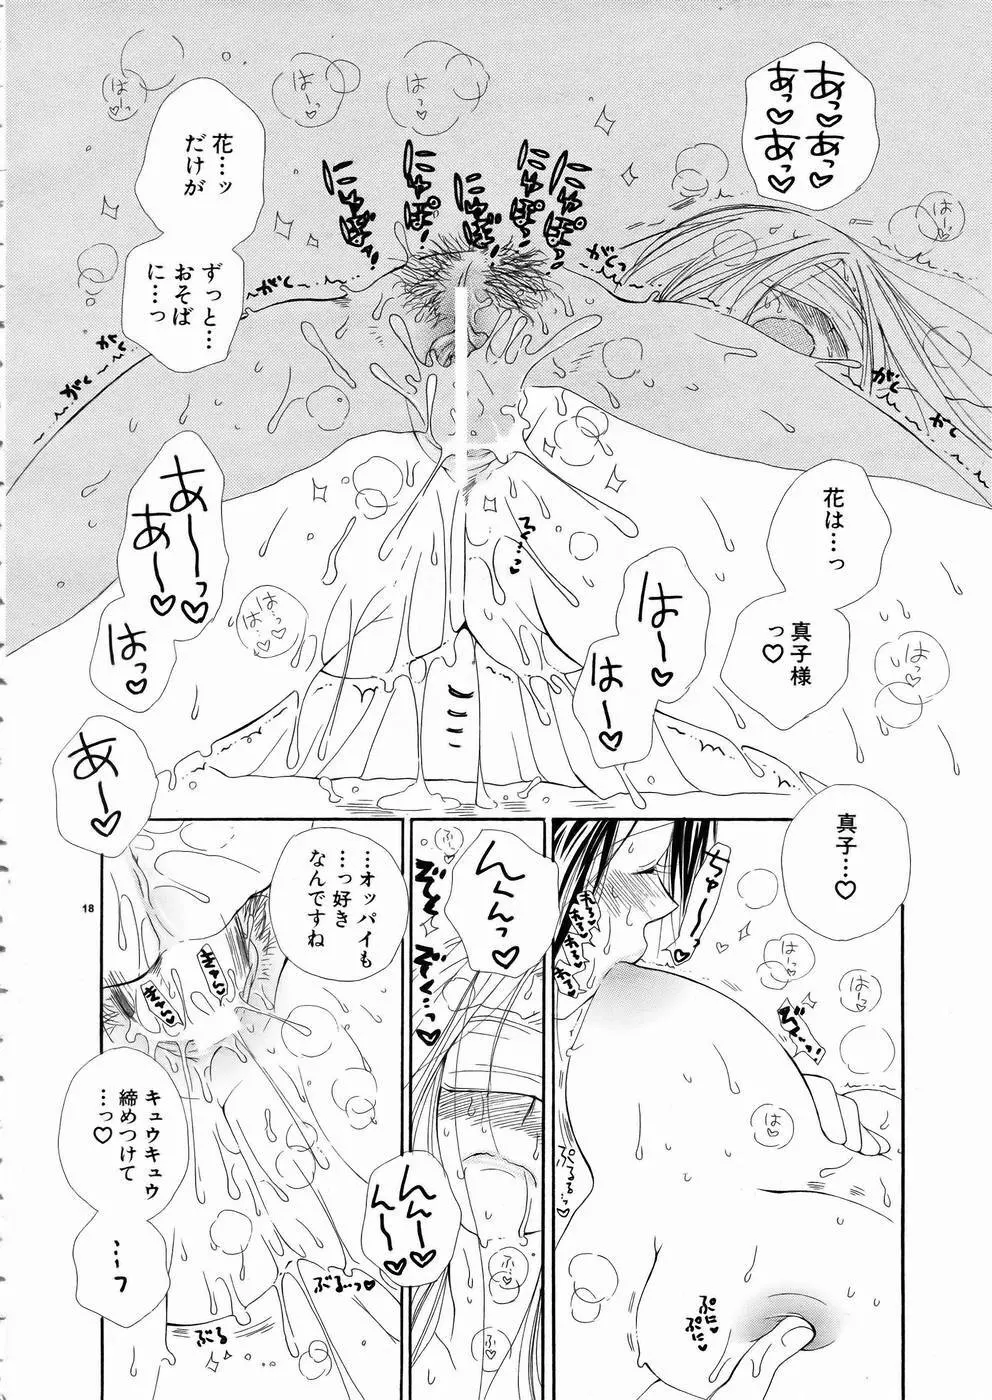 少女剣客凌辱コミック Vol.01 くノ一斬! 17ページ